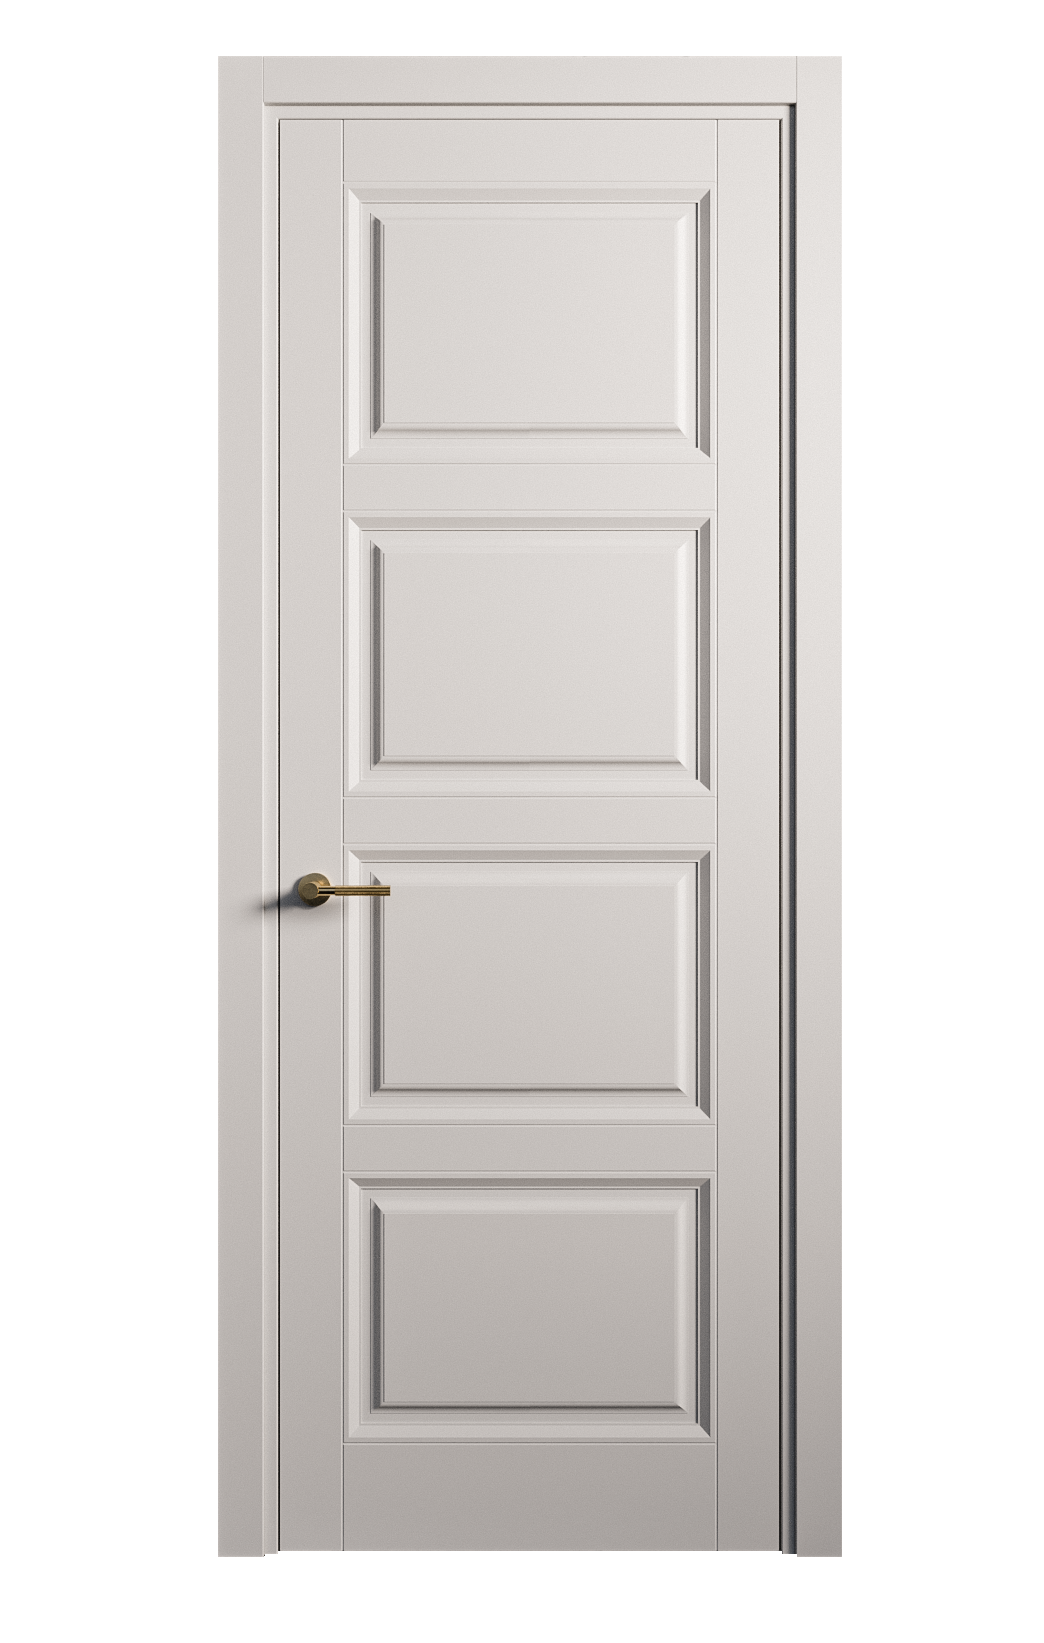 Межкомнатная дверь Venezia-4 глухая эмаль ral 7047 25852